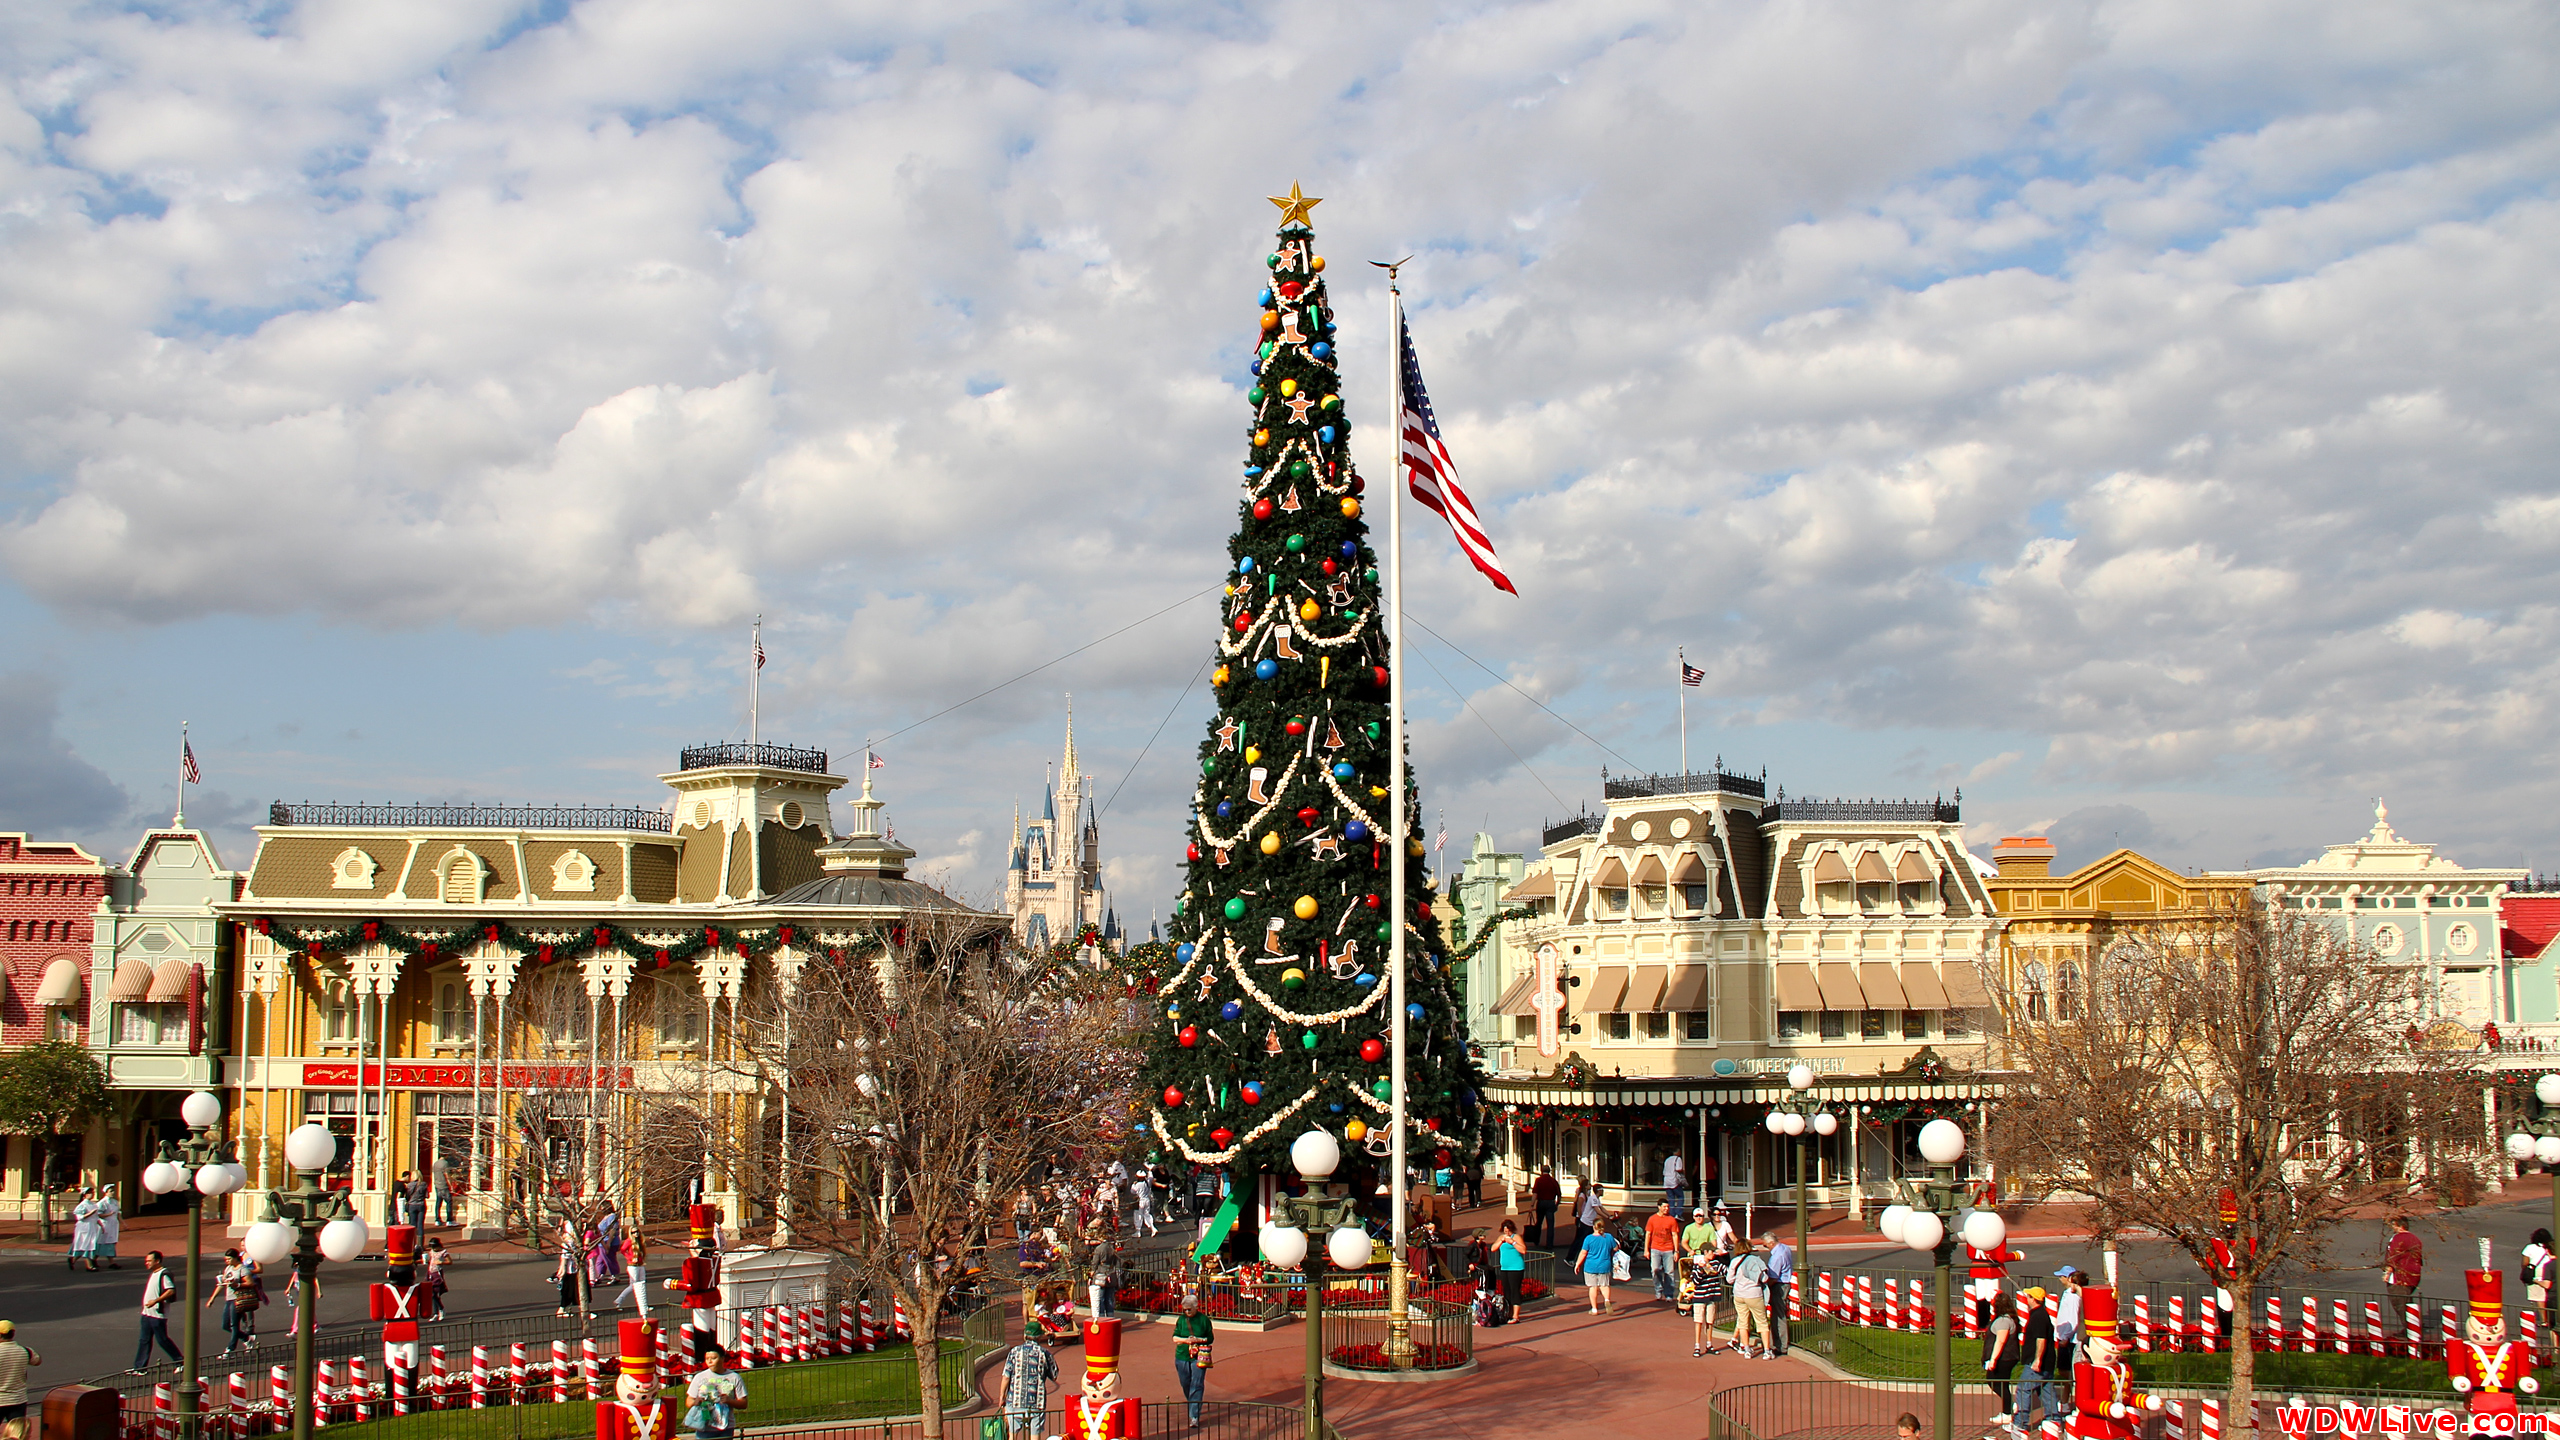 Main Street U.S.A.: The Magic Kingdom's giant Christmas tree!